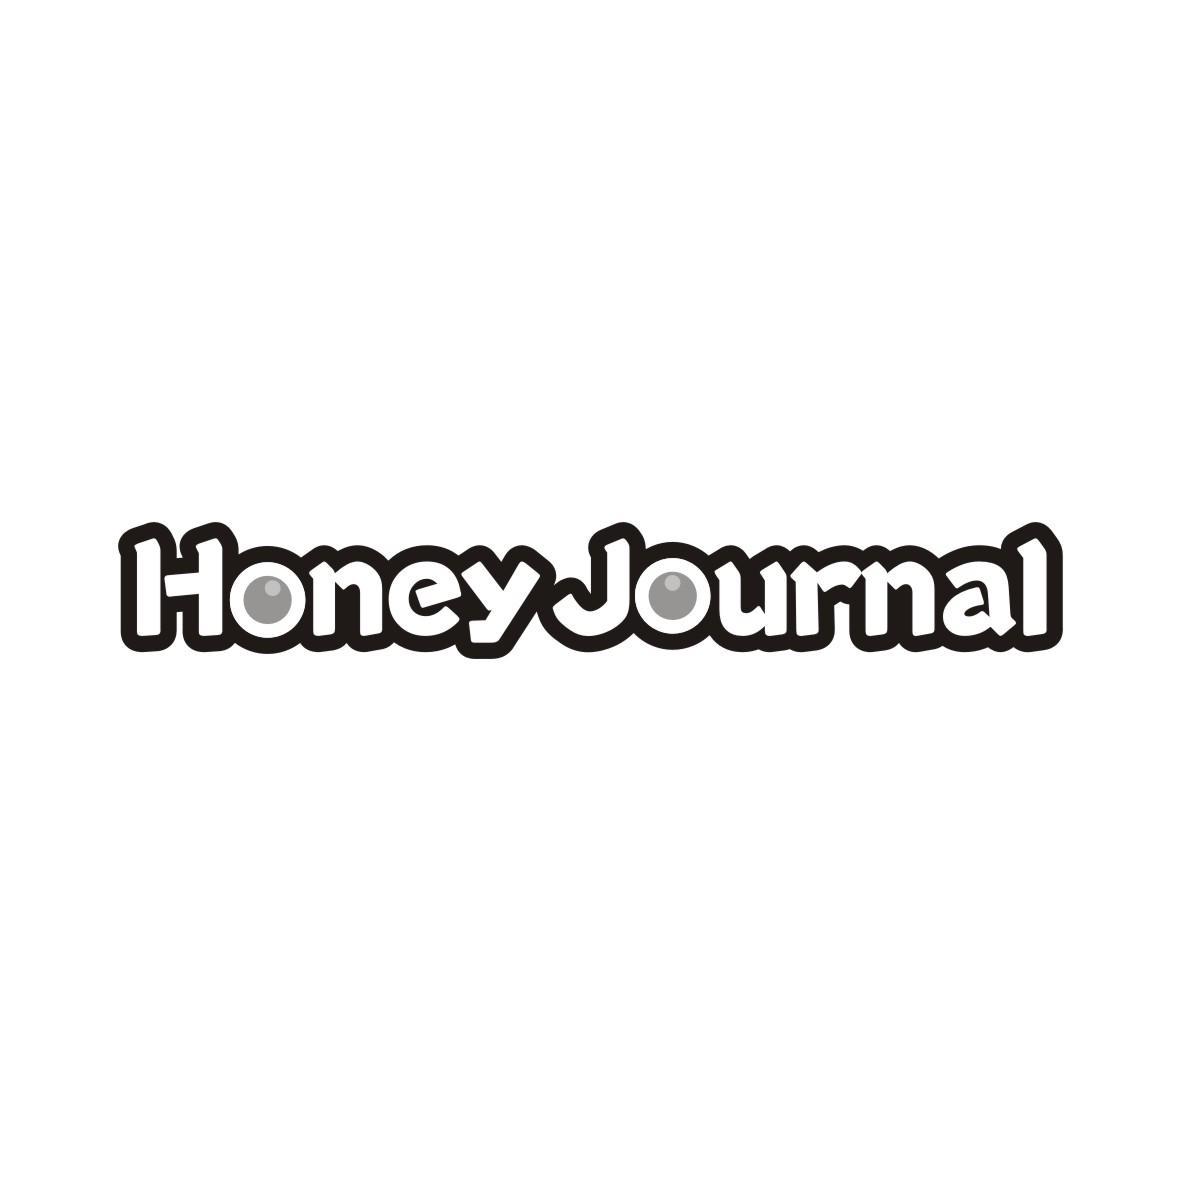 HONEY JOURNAL